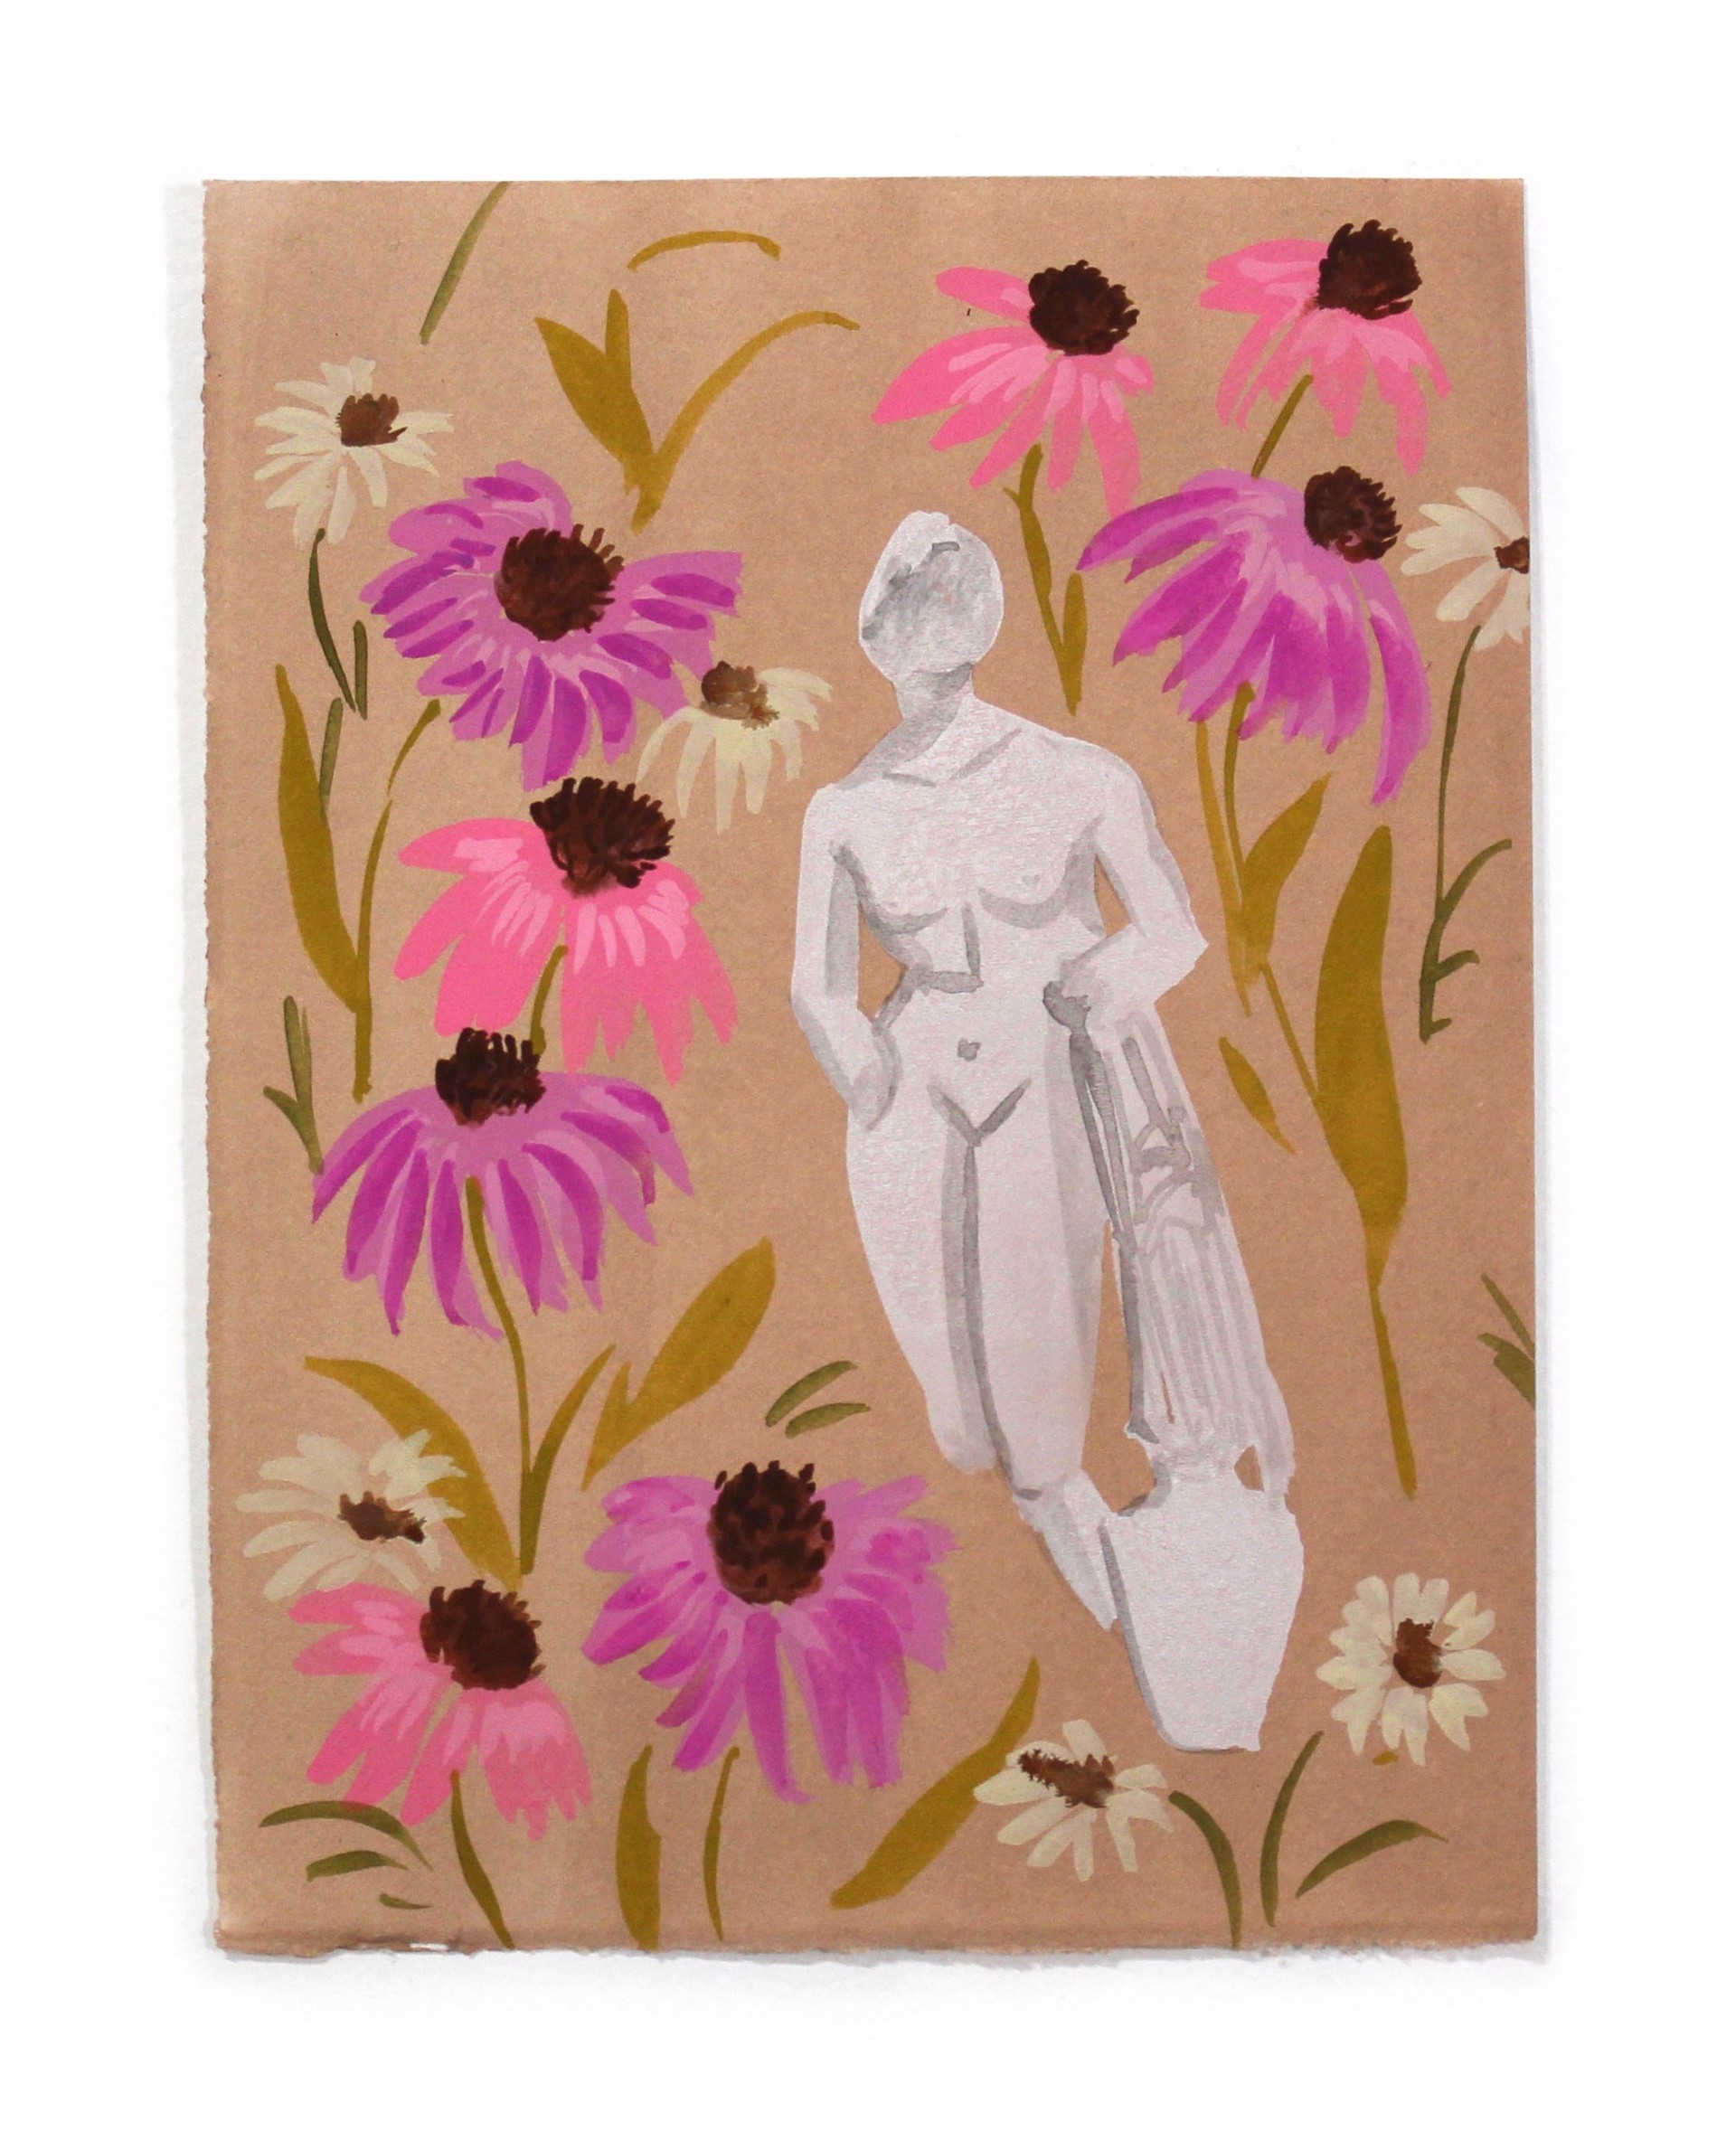 Women and Flowers III by Kayla Plosz Antiel